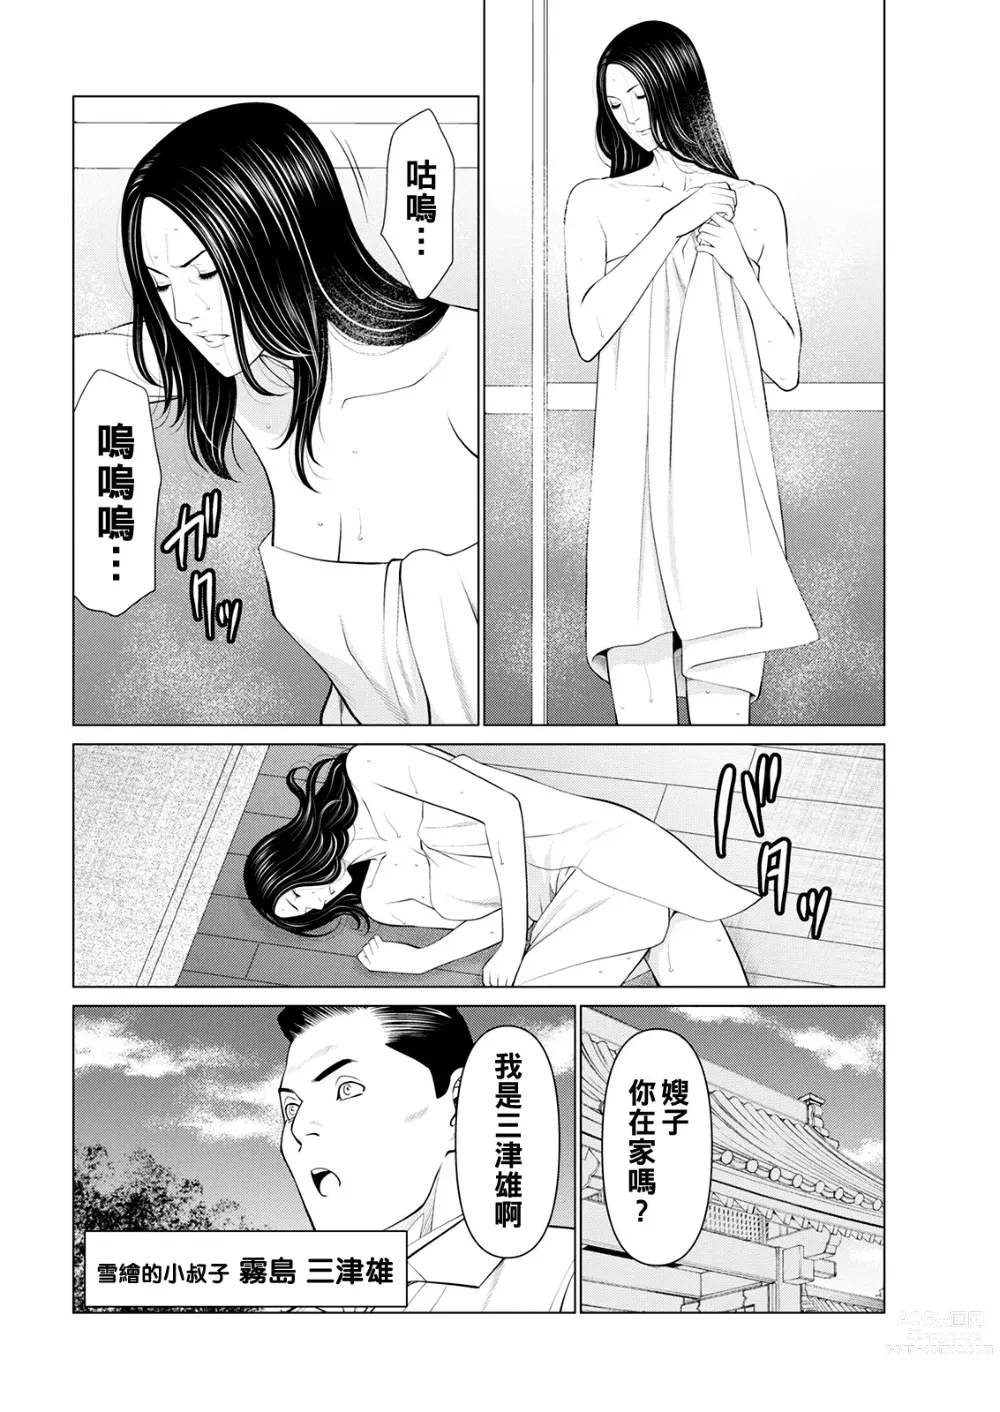 Page 30 of manga Rengoku no Sono - The Garden of Purgatory